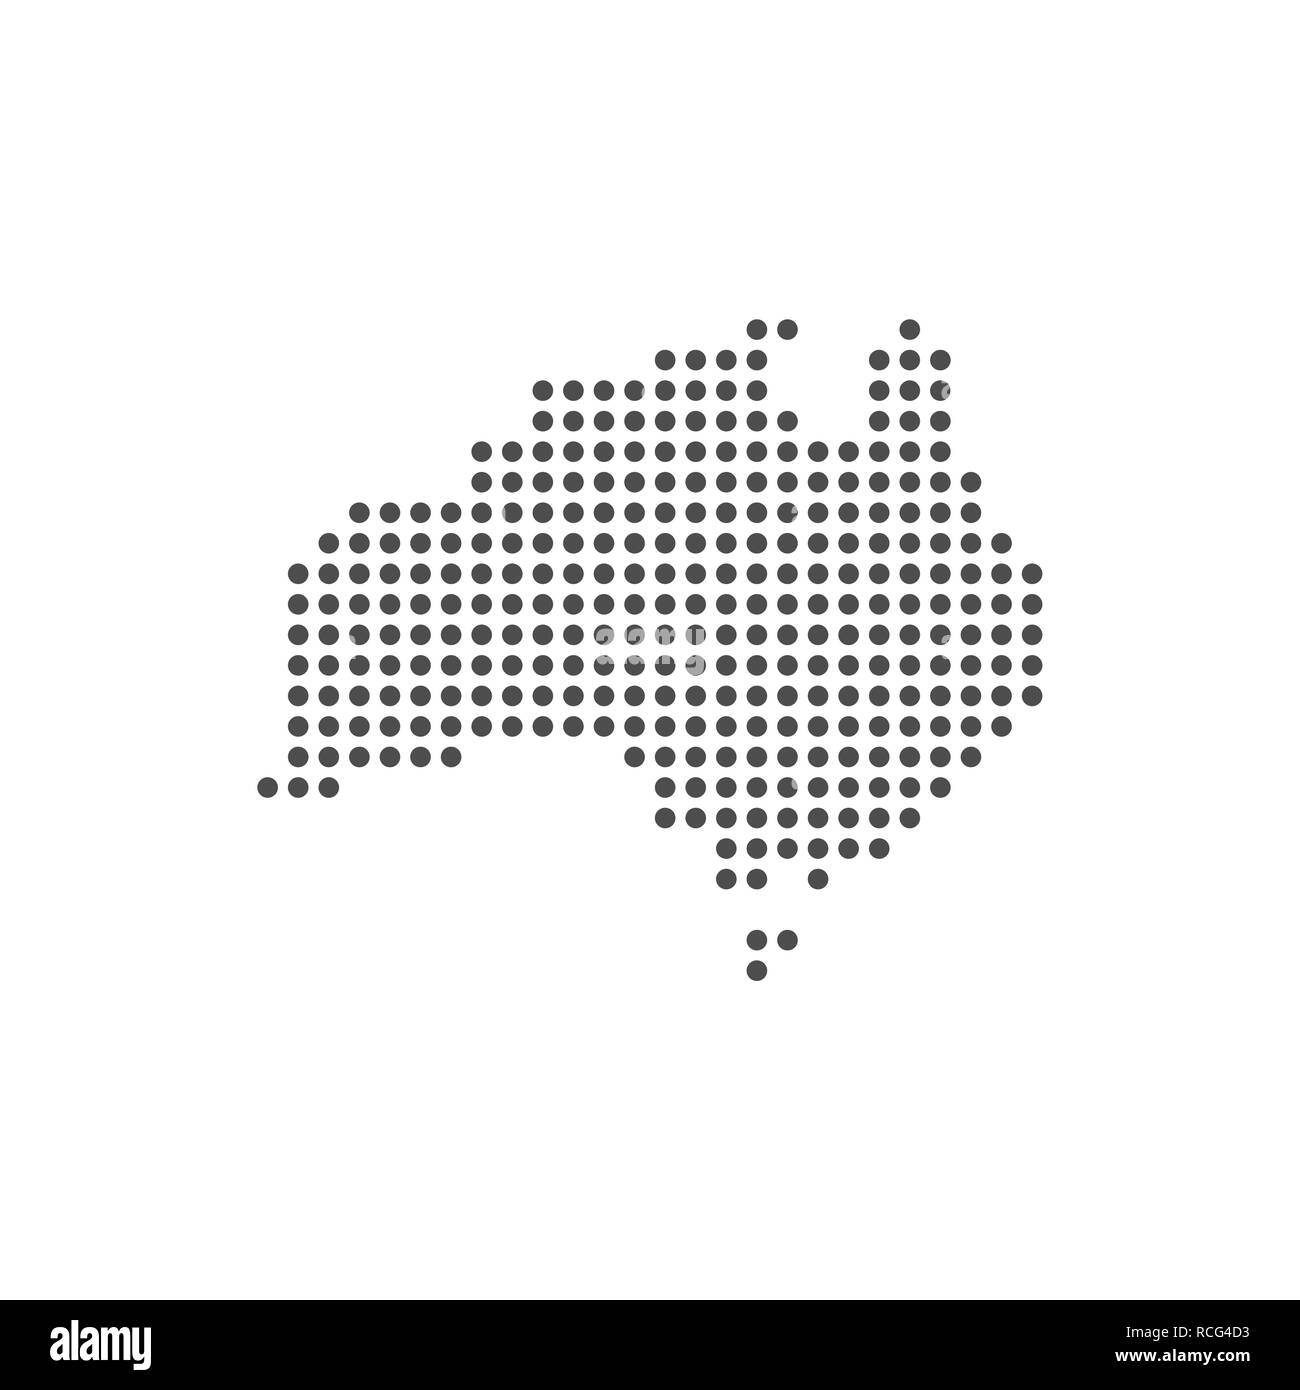 L'Australie en pointillé gris world map vector design plat Illustration de Vecteur